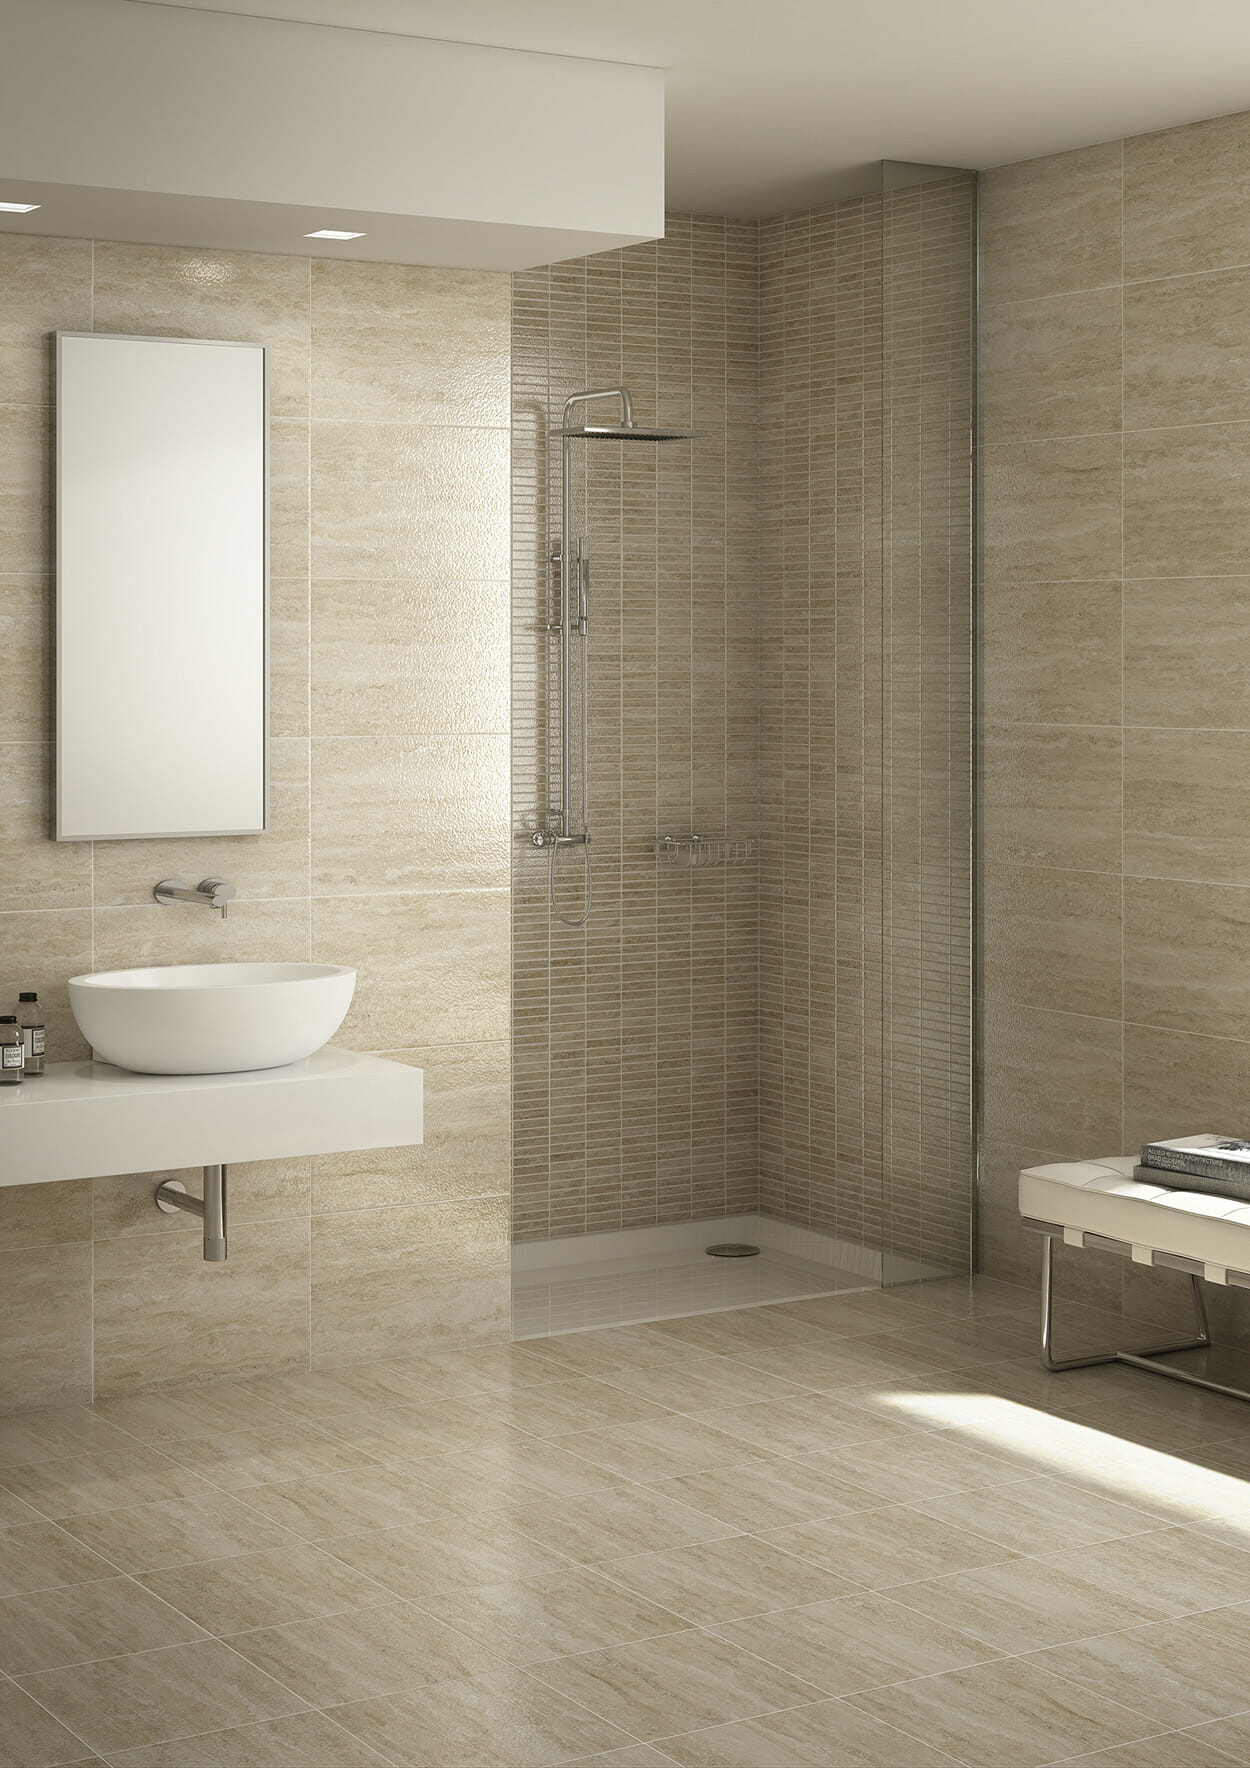 Serra_Travertino_Bathroom_Install